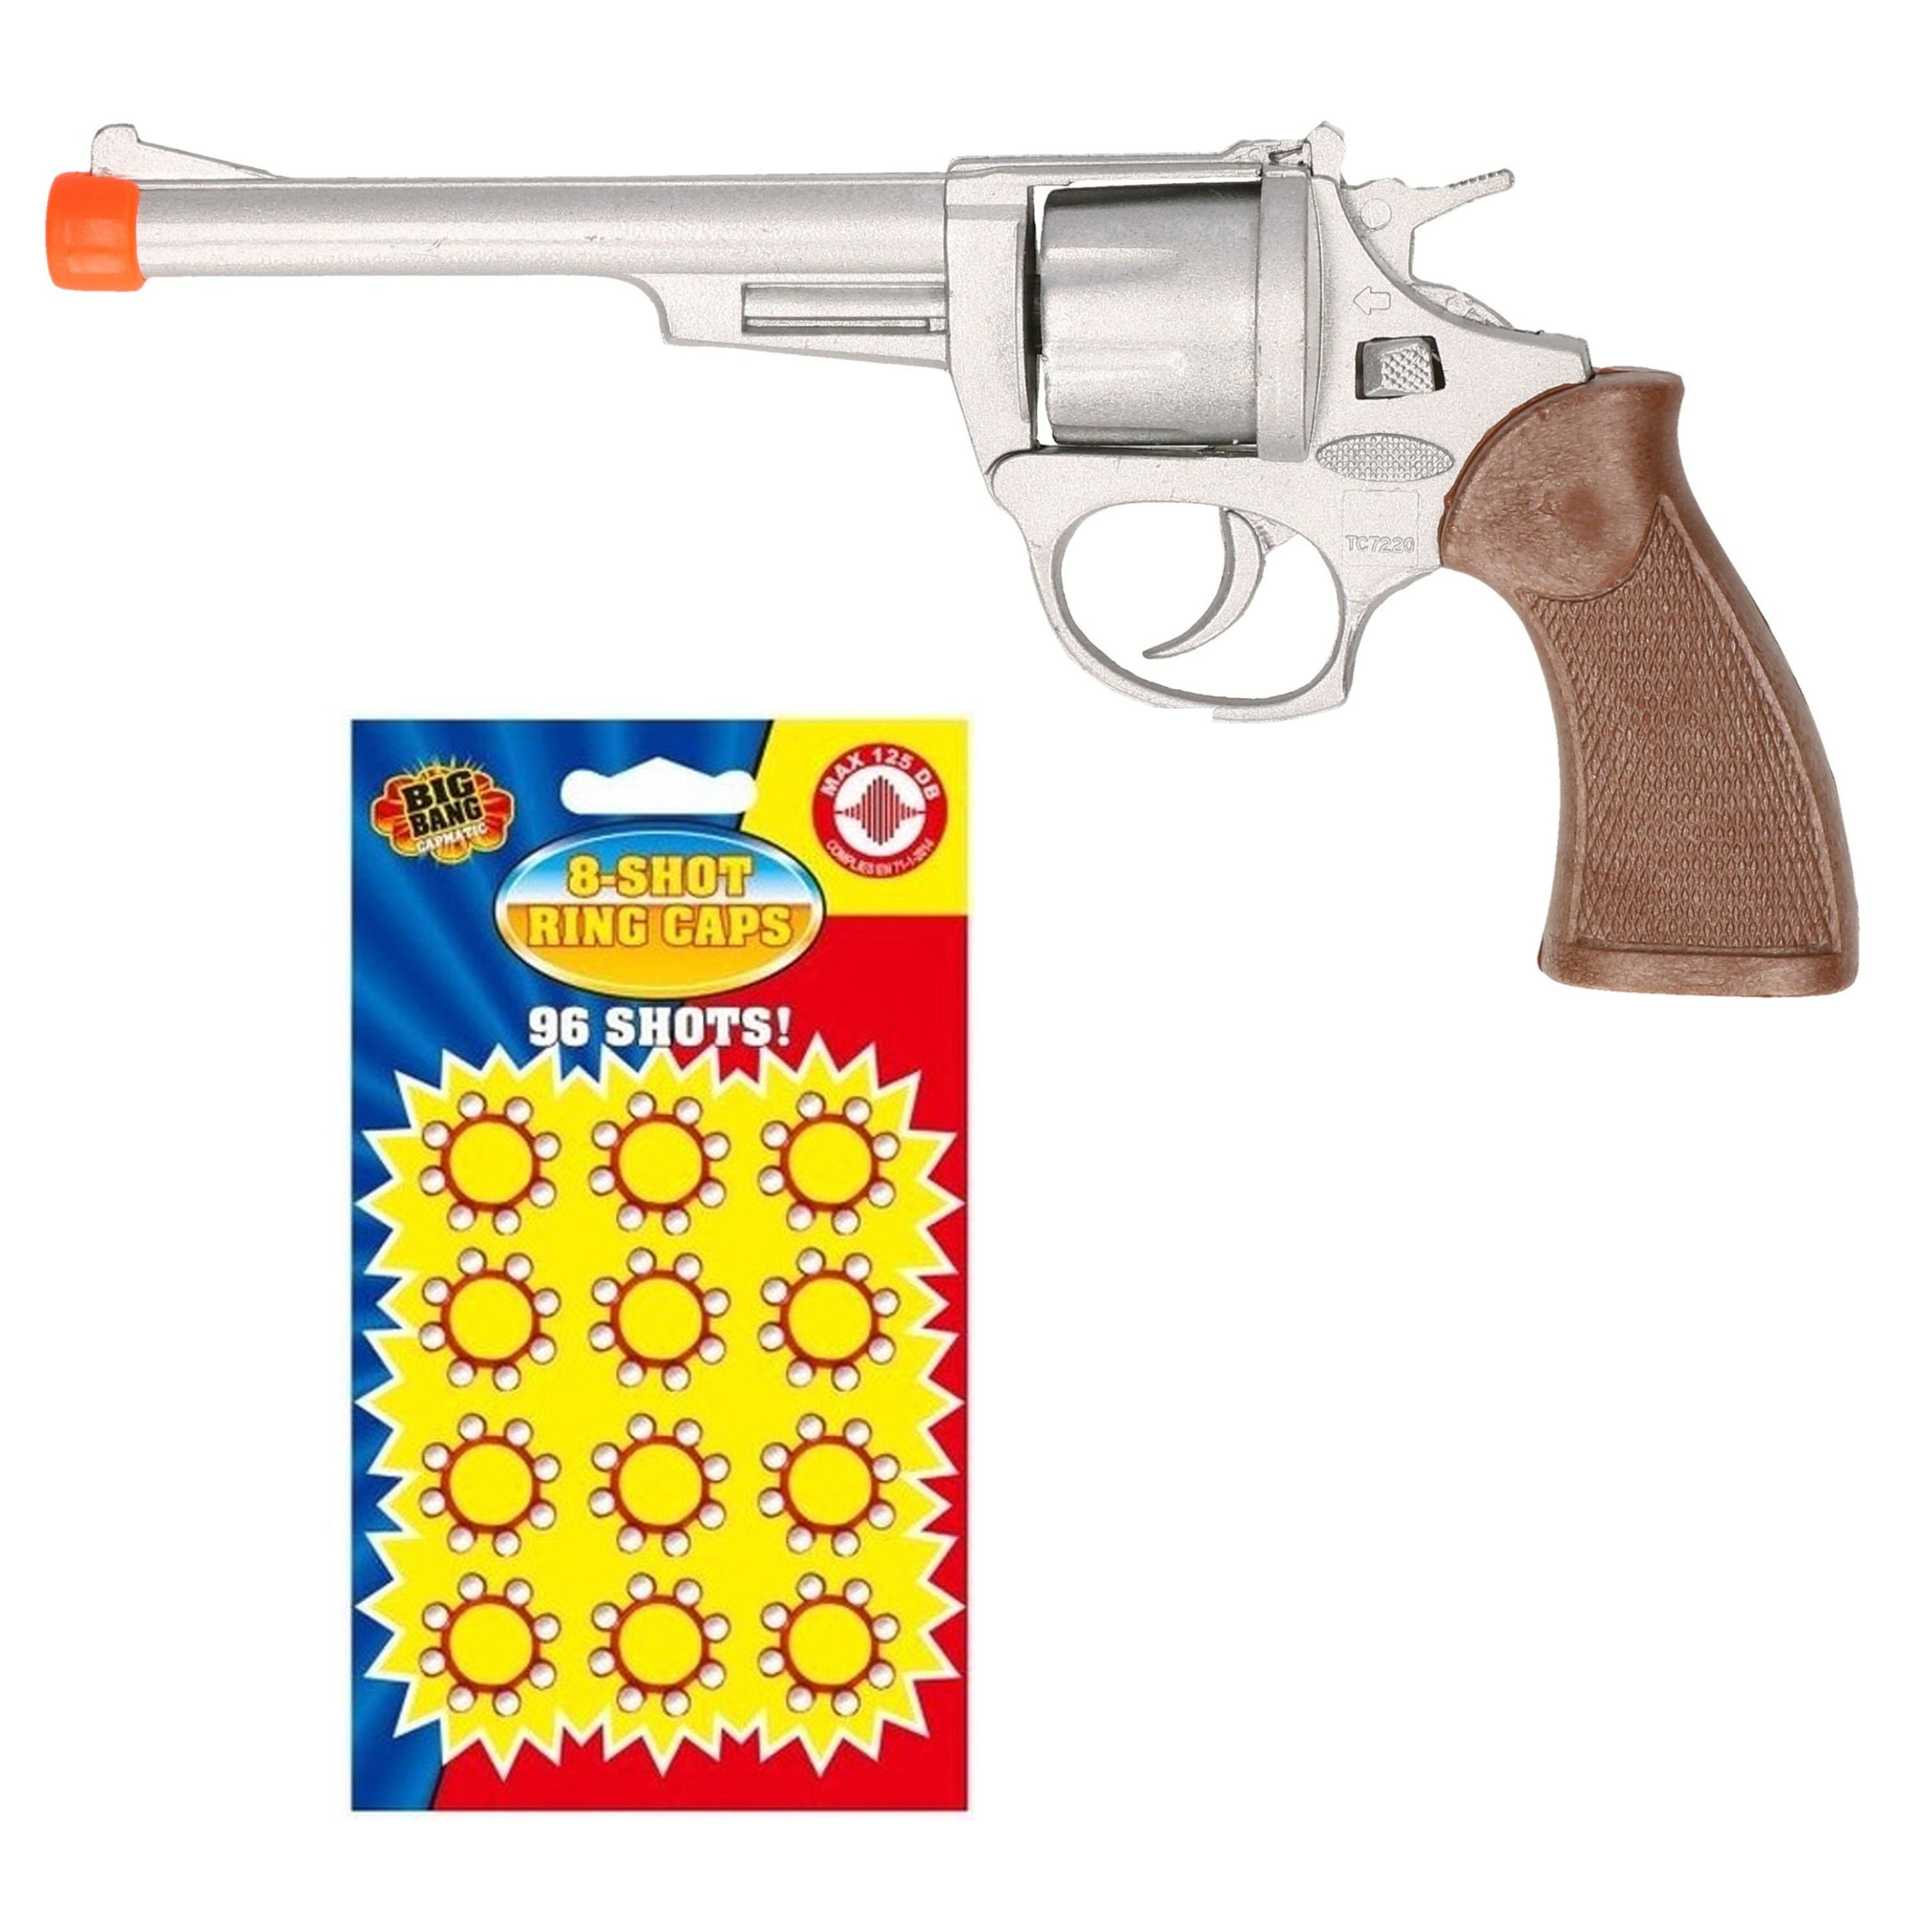 Cowboy speelgoed revolver-pistool metaal 8 schots met plaffertjes